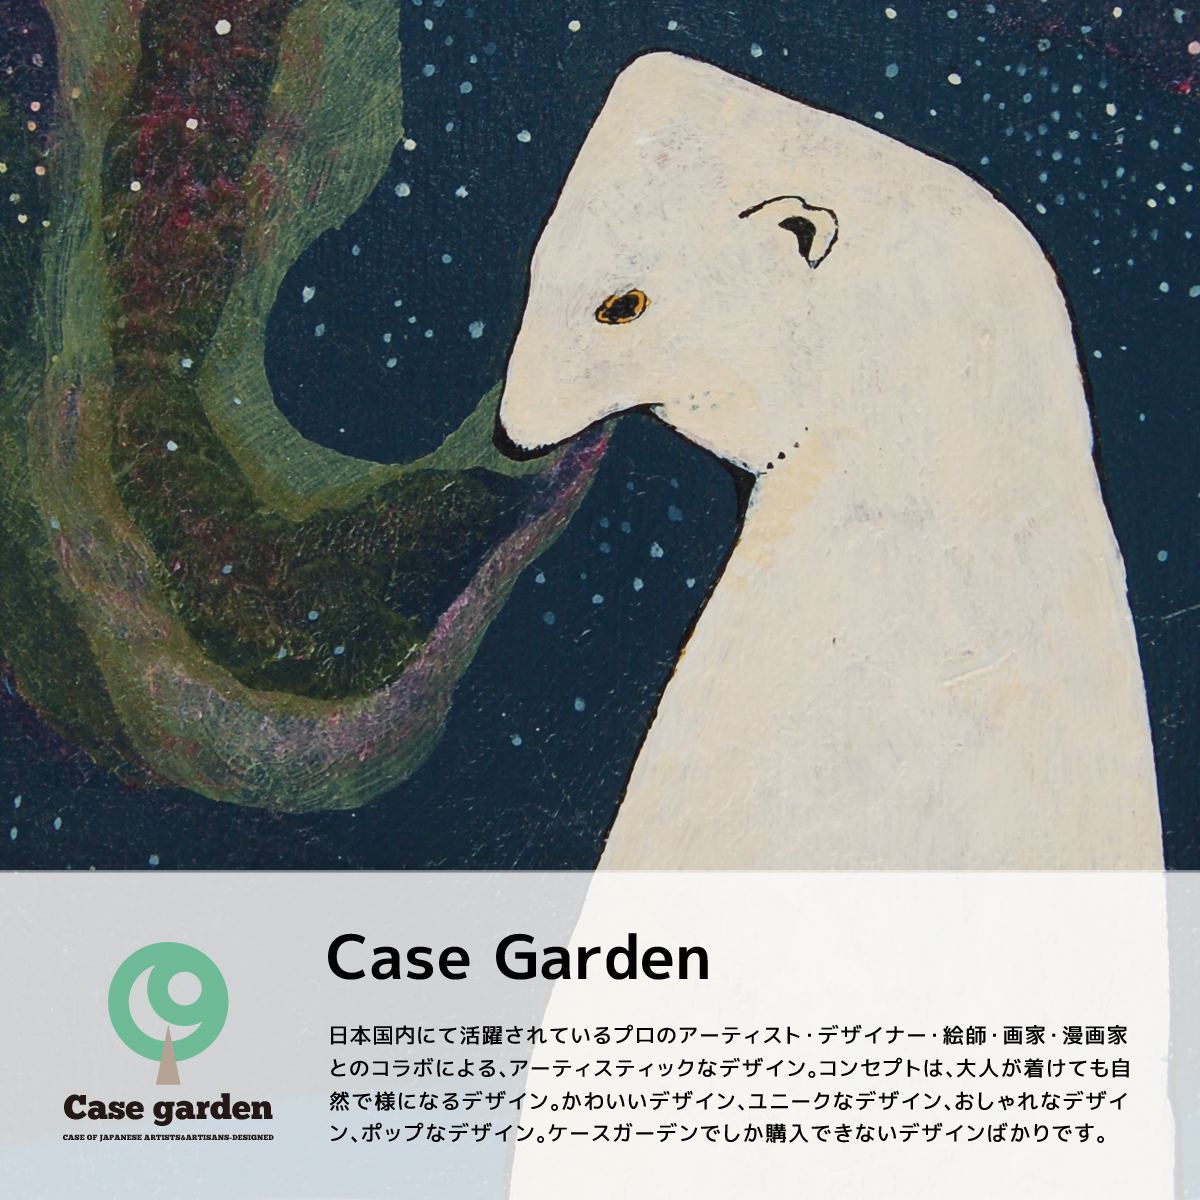 「Casegarden」　プロのアーティスト・デザイナー・絵師・画家・漫画家とのコラボによるブランド